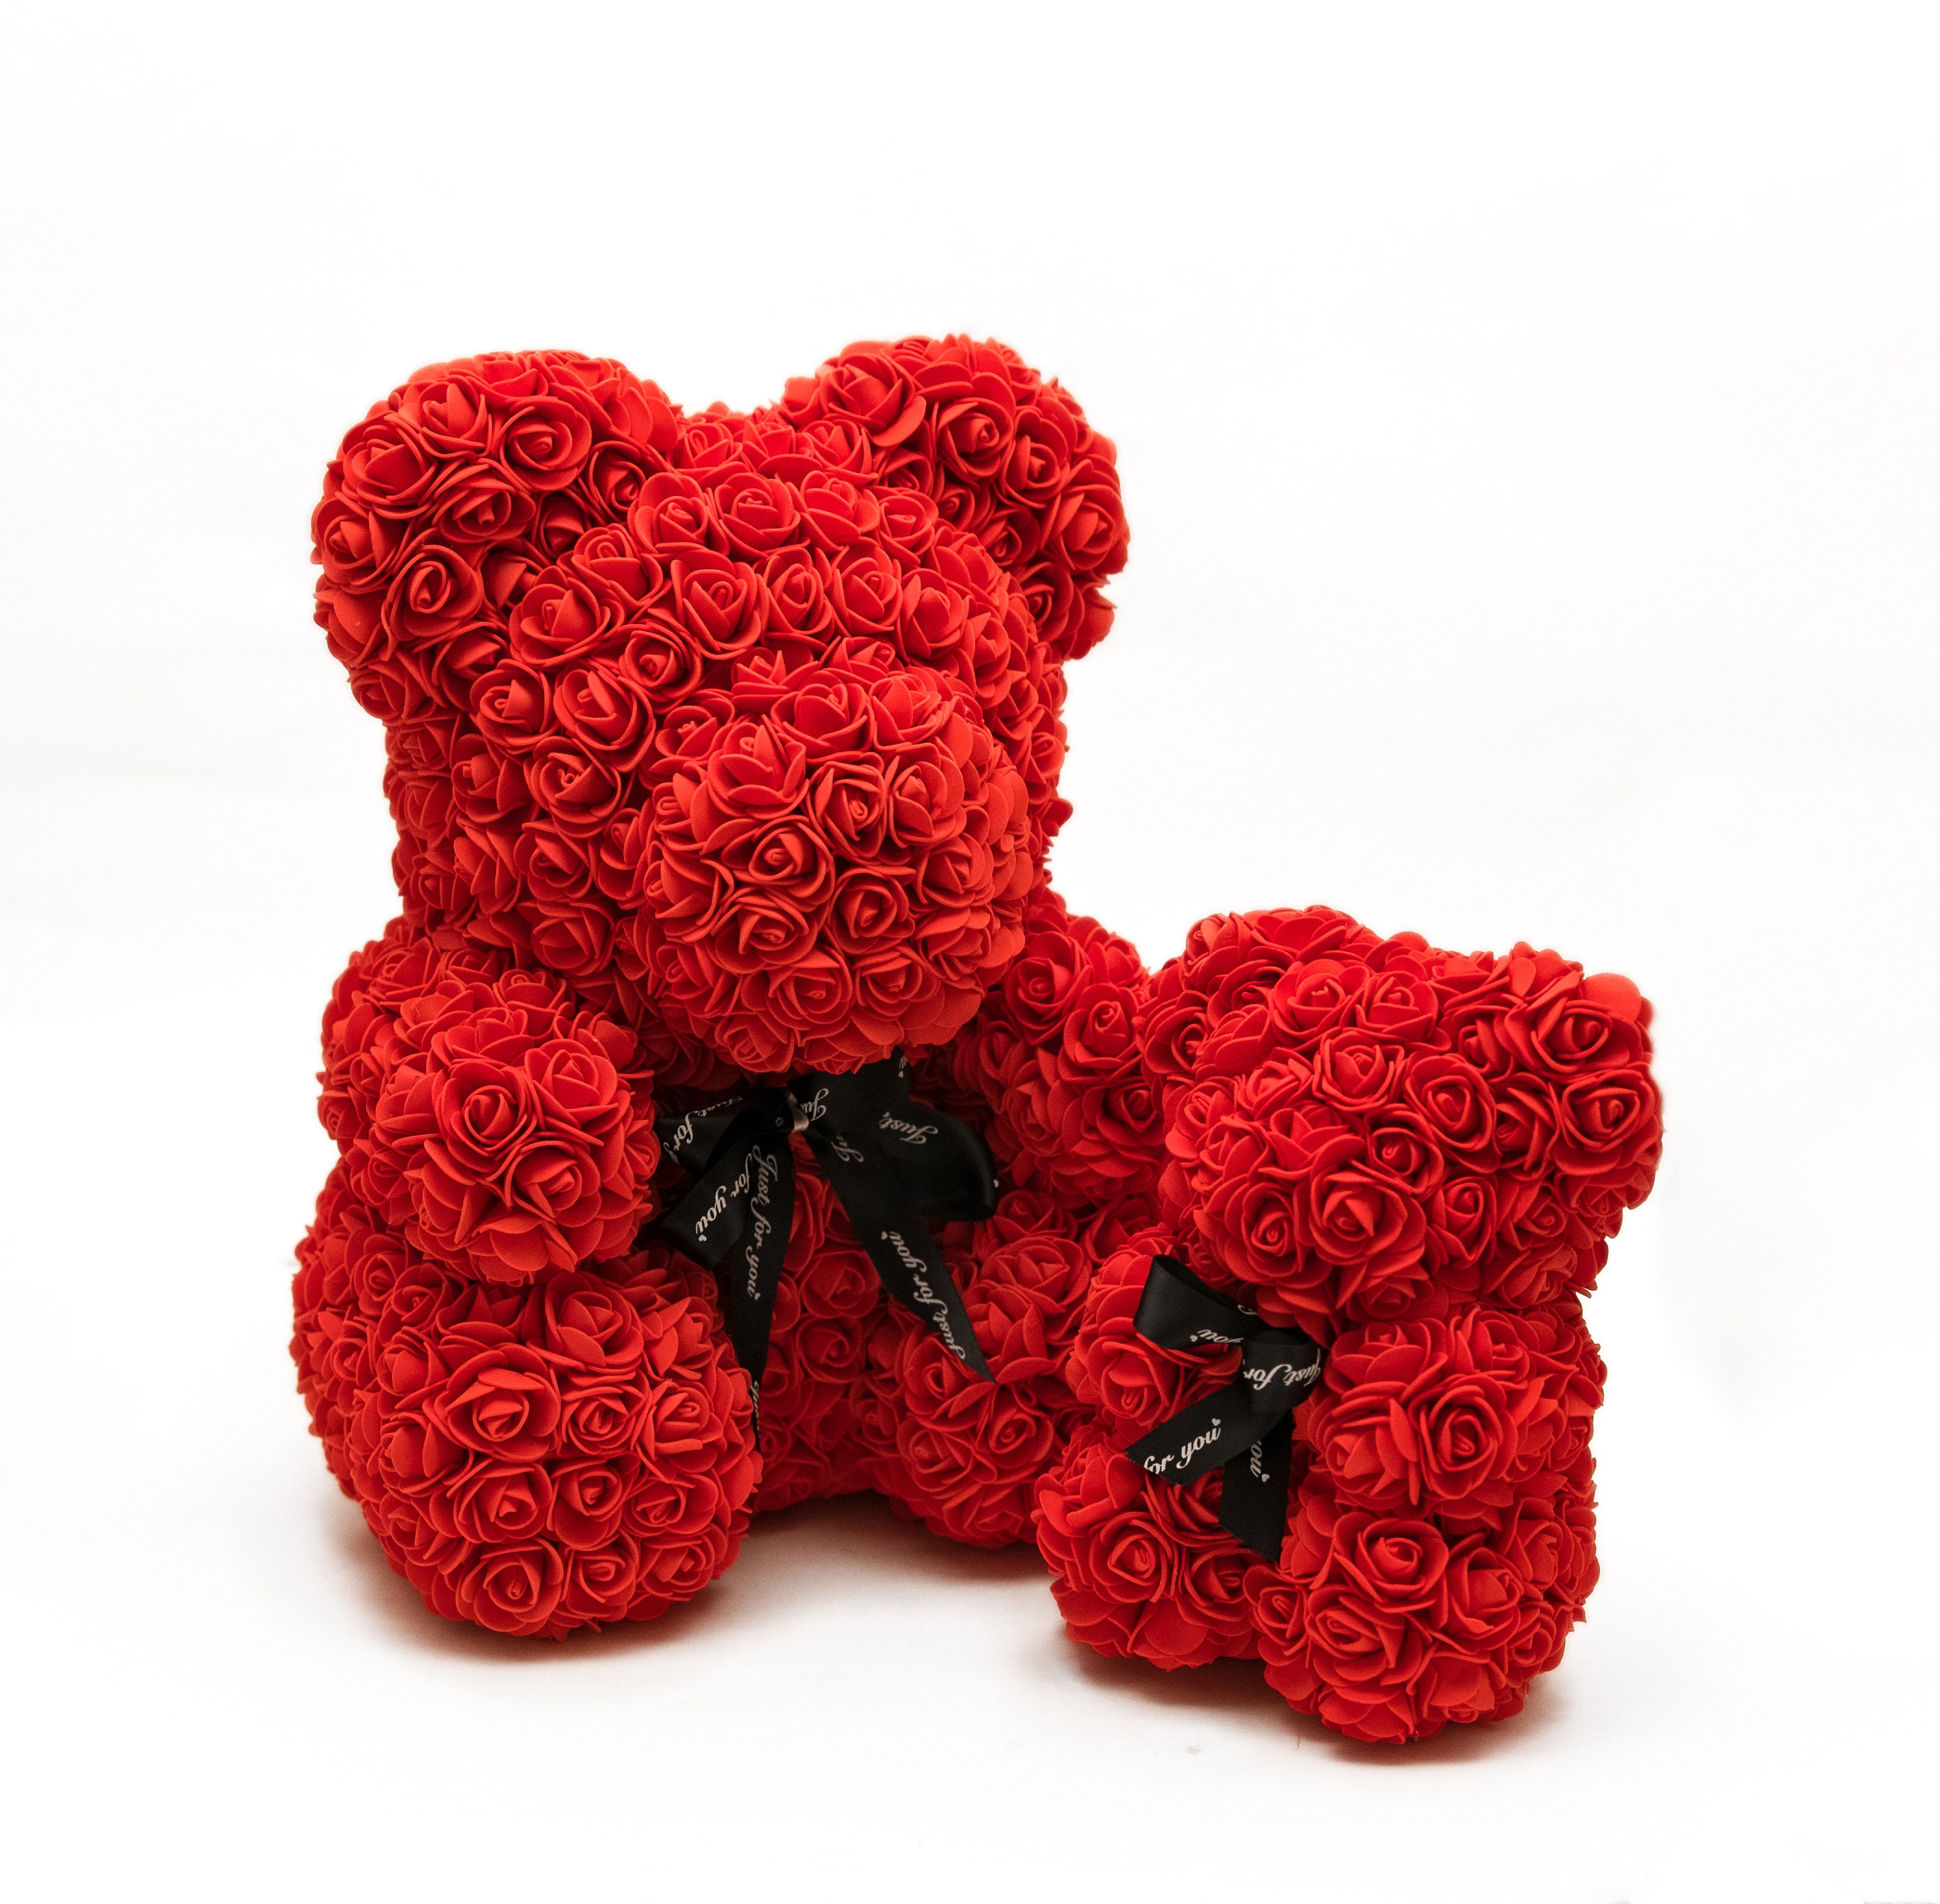 Мишка из роз. Подарок мишка из роз. Медведь из розочек. Мишка Тедди с розами.